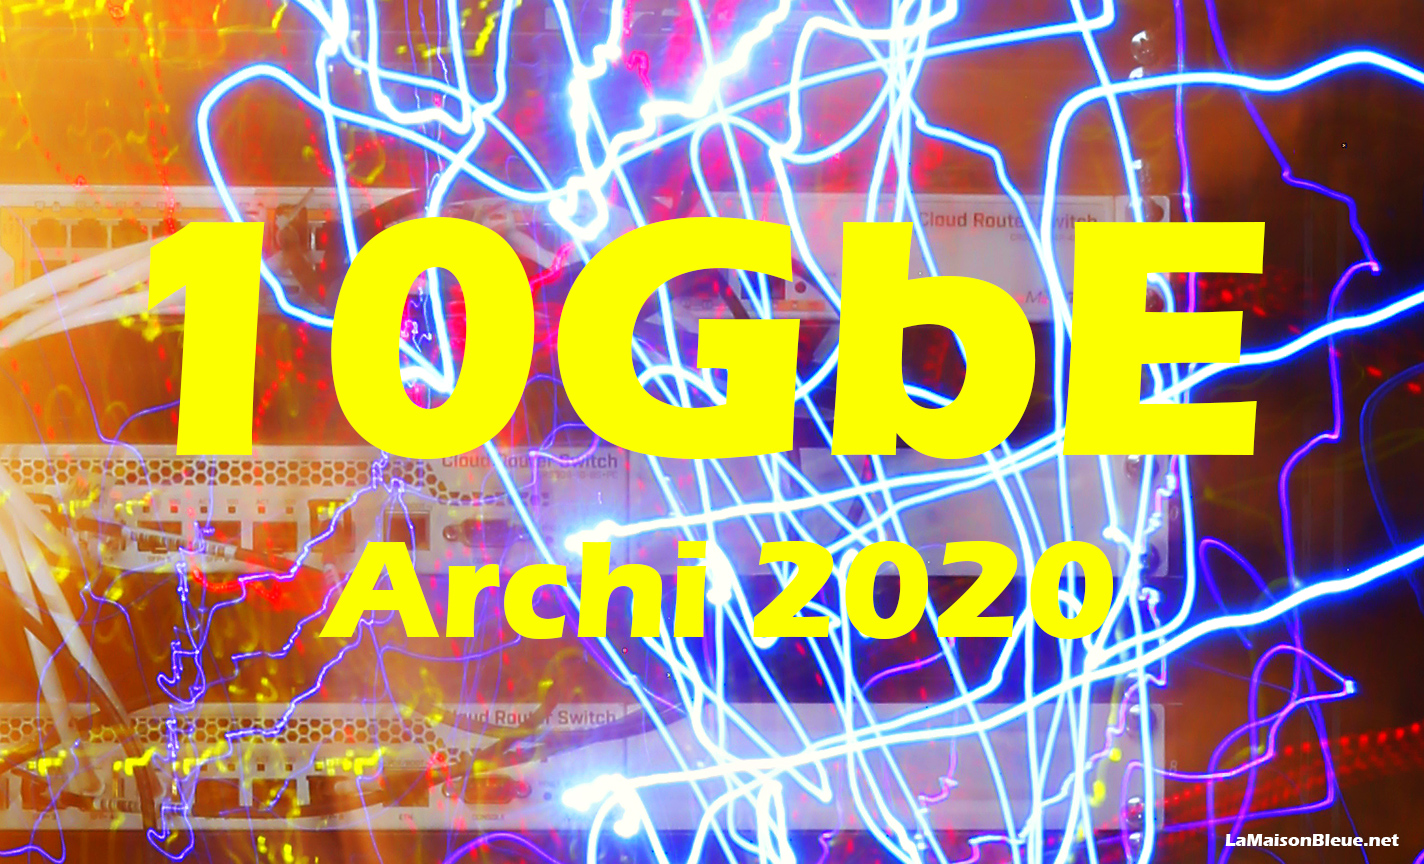 10 GbE – Archi 2020